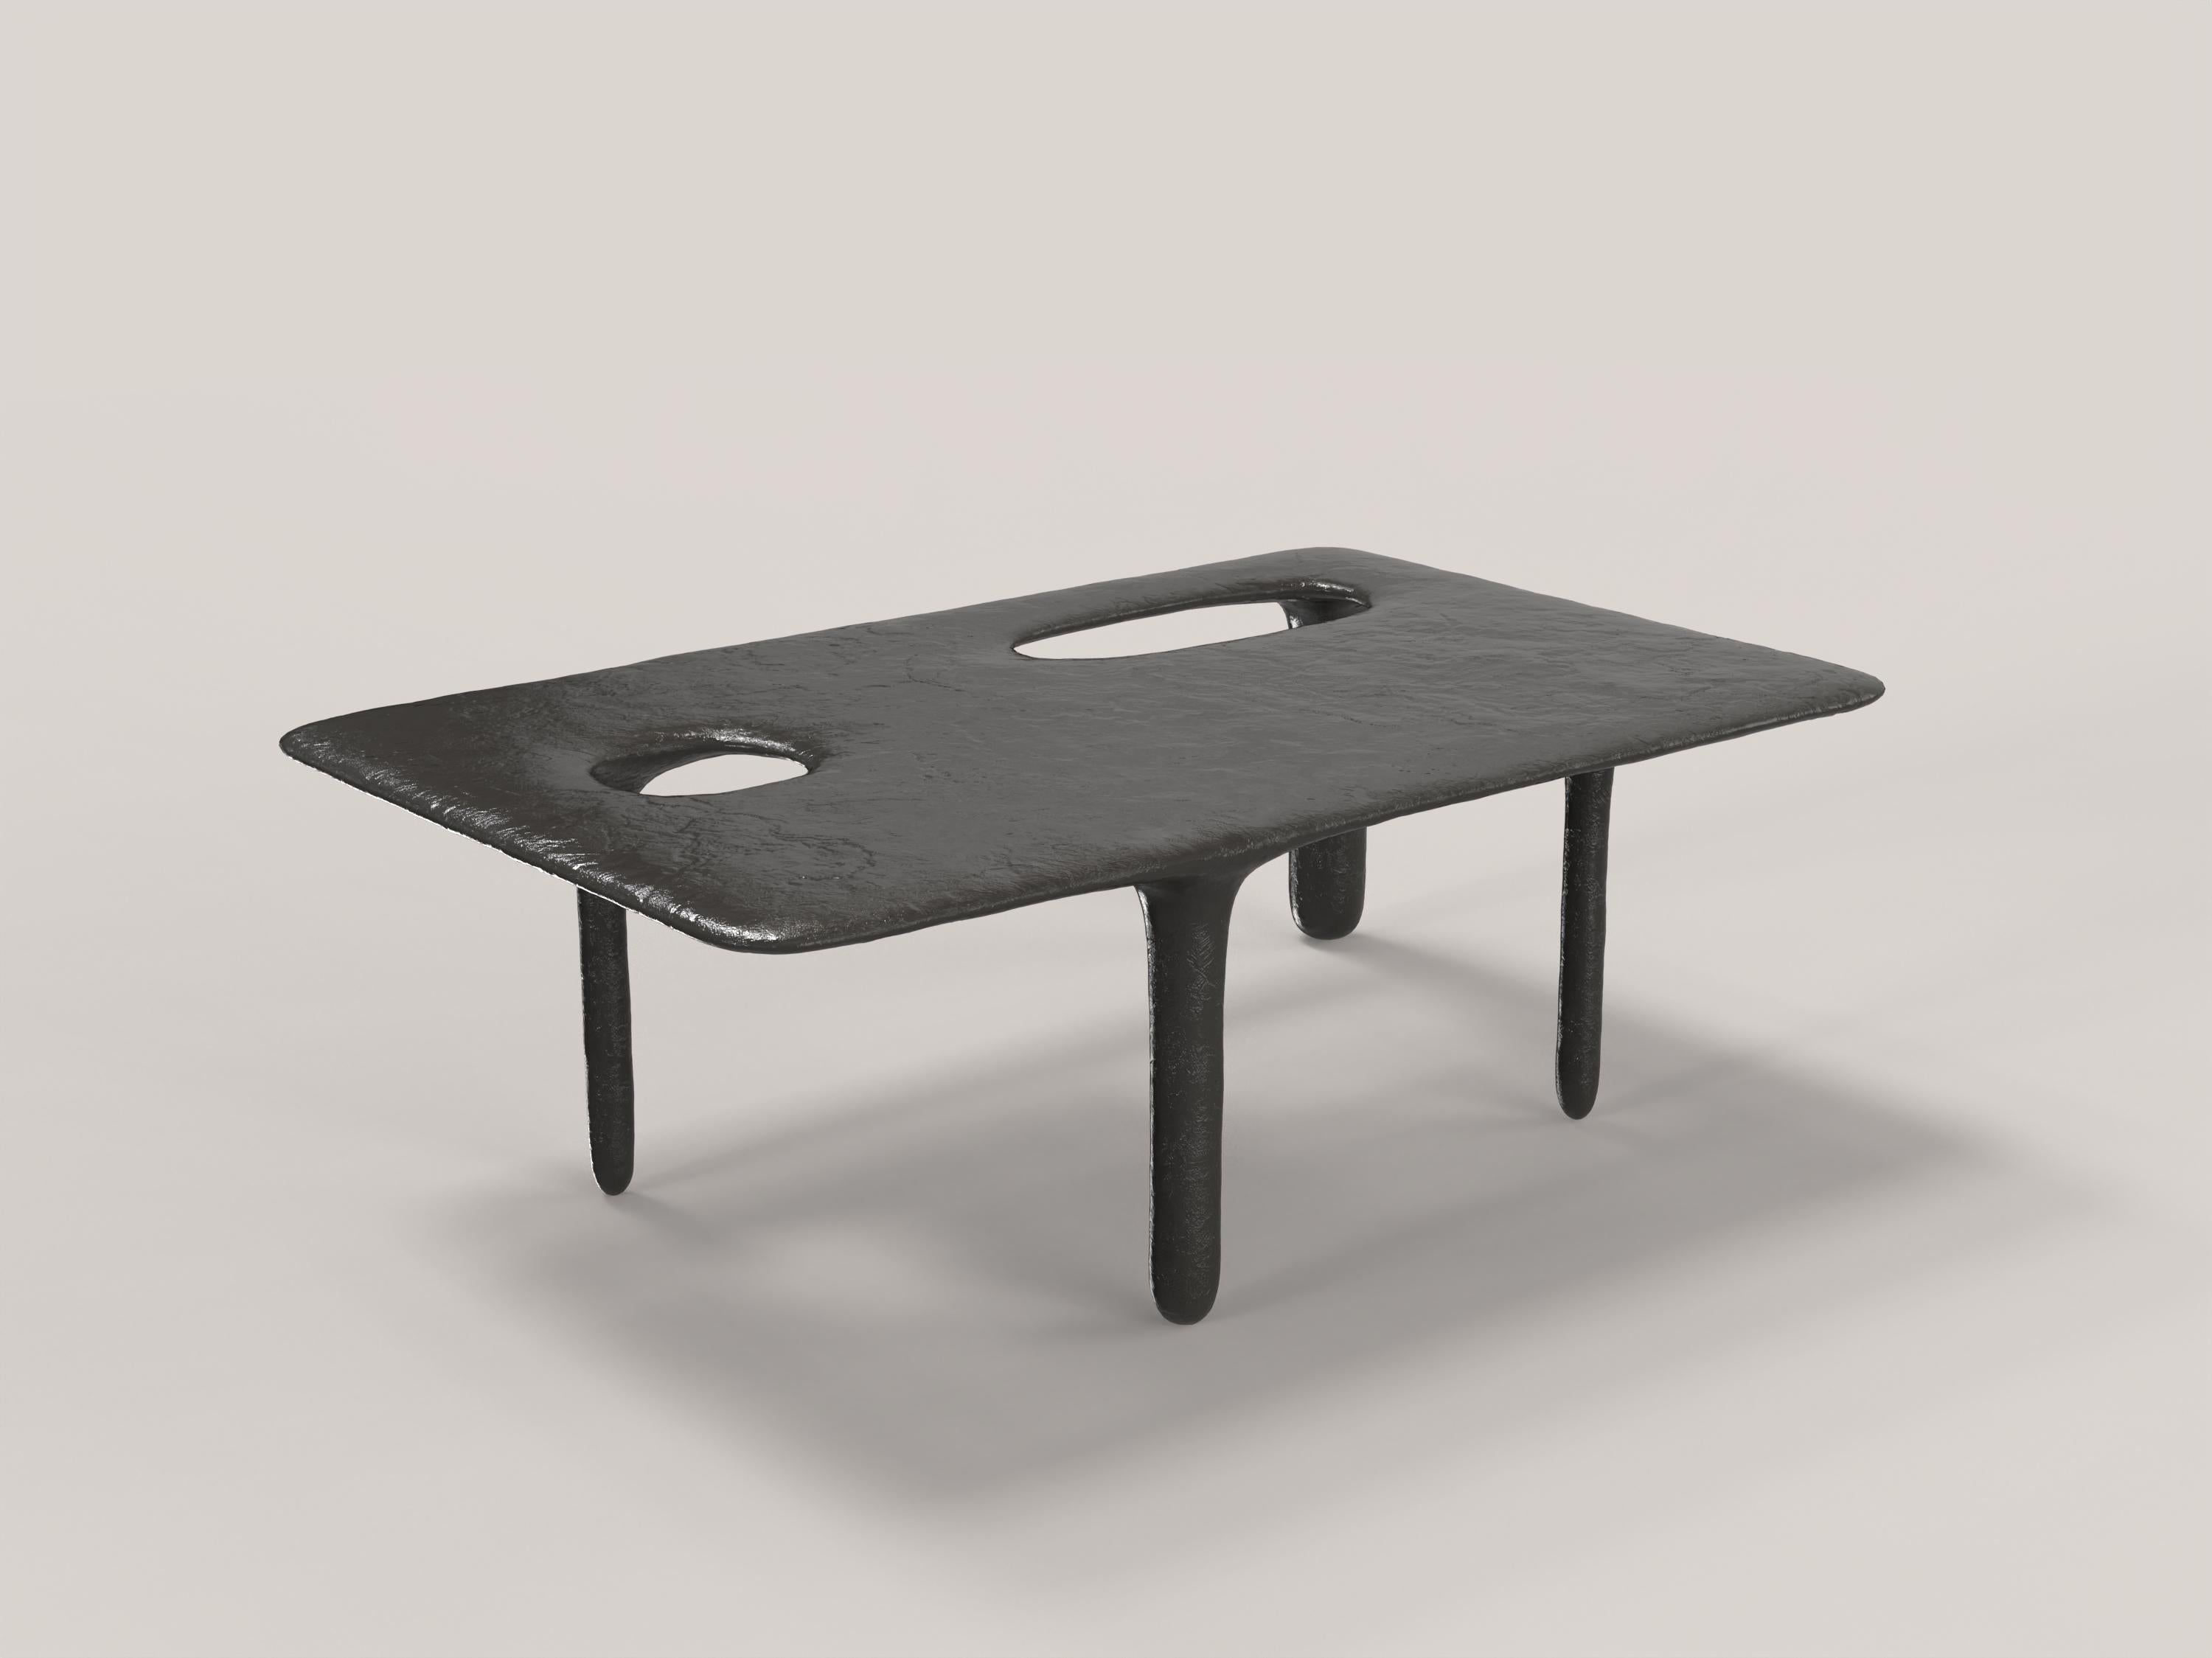 Limited Edition Bronze Table, Oasi V2 by Edizione Limitata For Sale 1